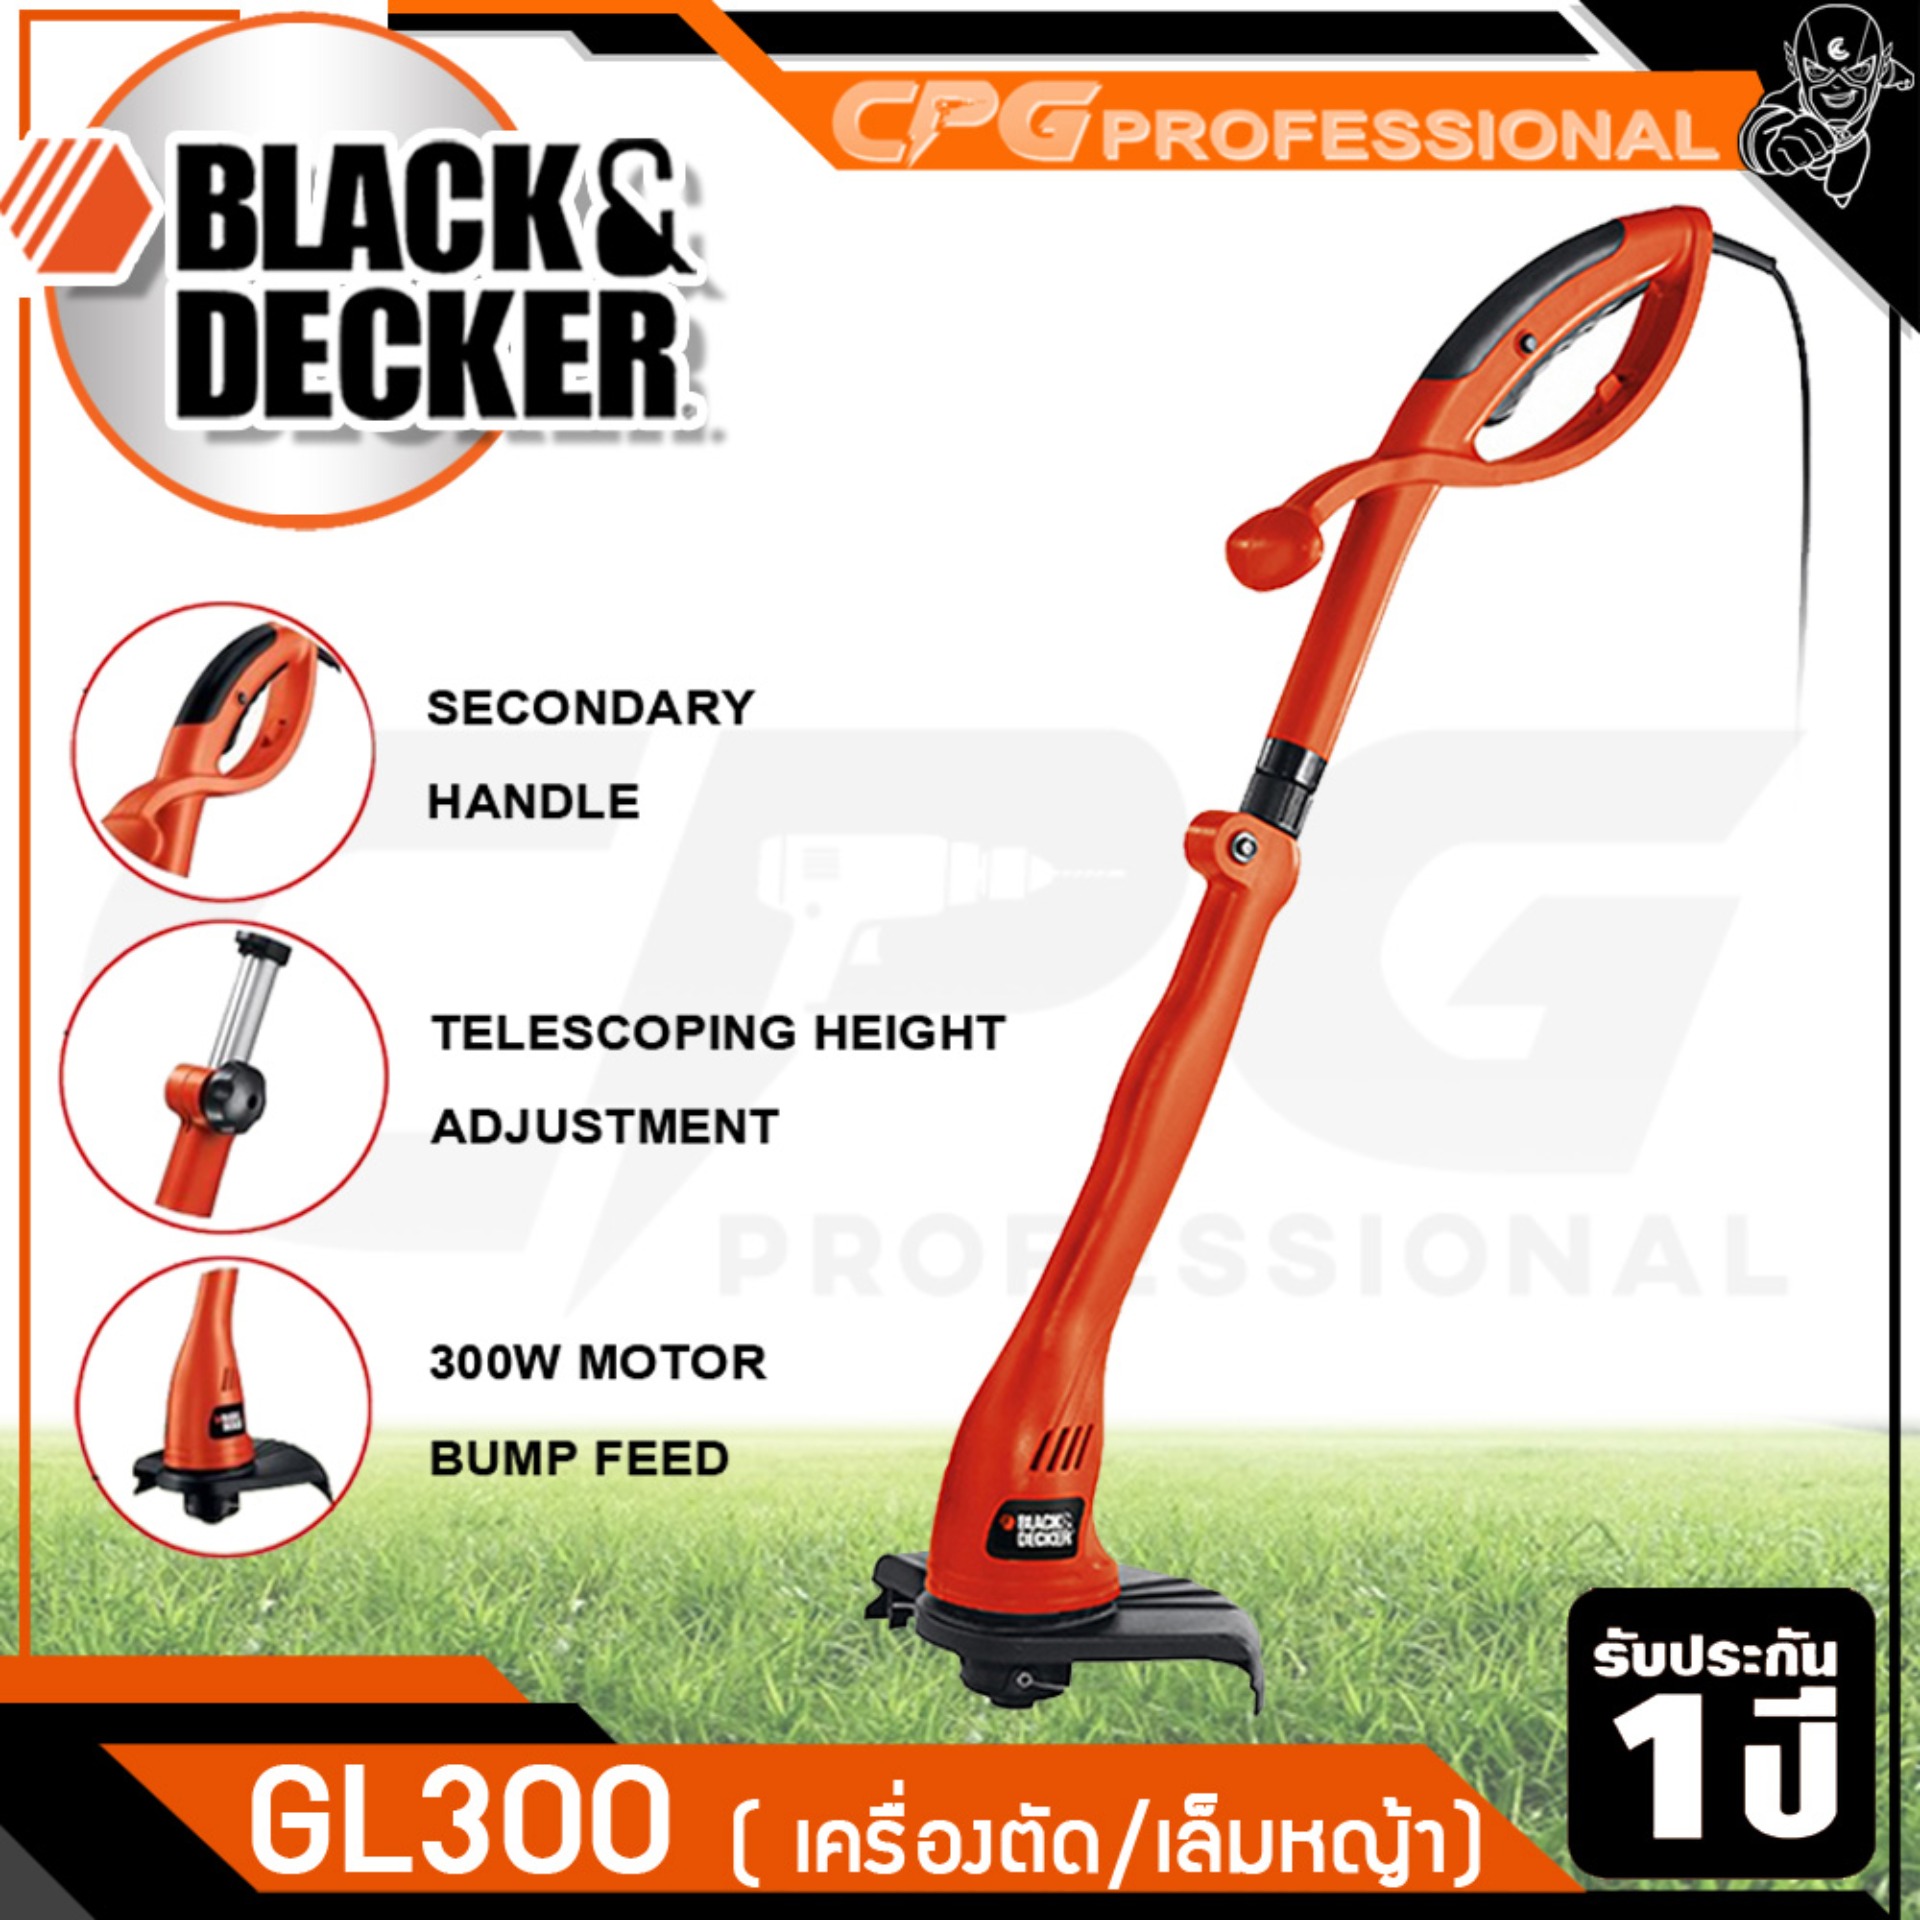 BLACK&DECKER เครื่องเล็มหญ้า เครื่องเล็มหญ้าไฟฟ้า (กำลัง 300วัตต์) รุ่น GL300 ++สินค้าขายดี ใช้เป็น เครื่องตัดหญ้า (ต้นไม่ใหญ่มาก) ได้++